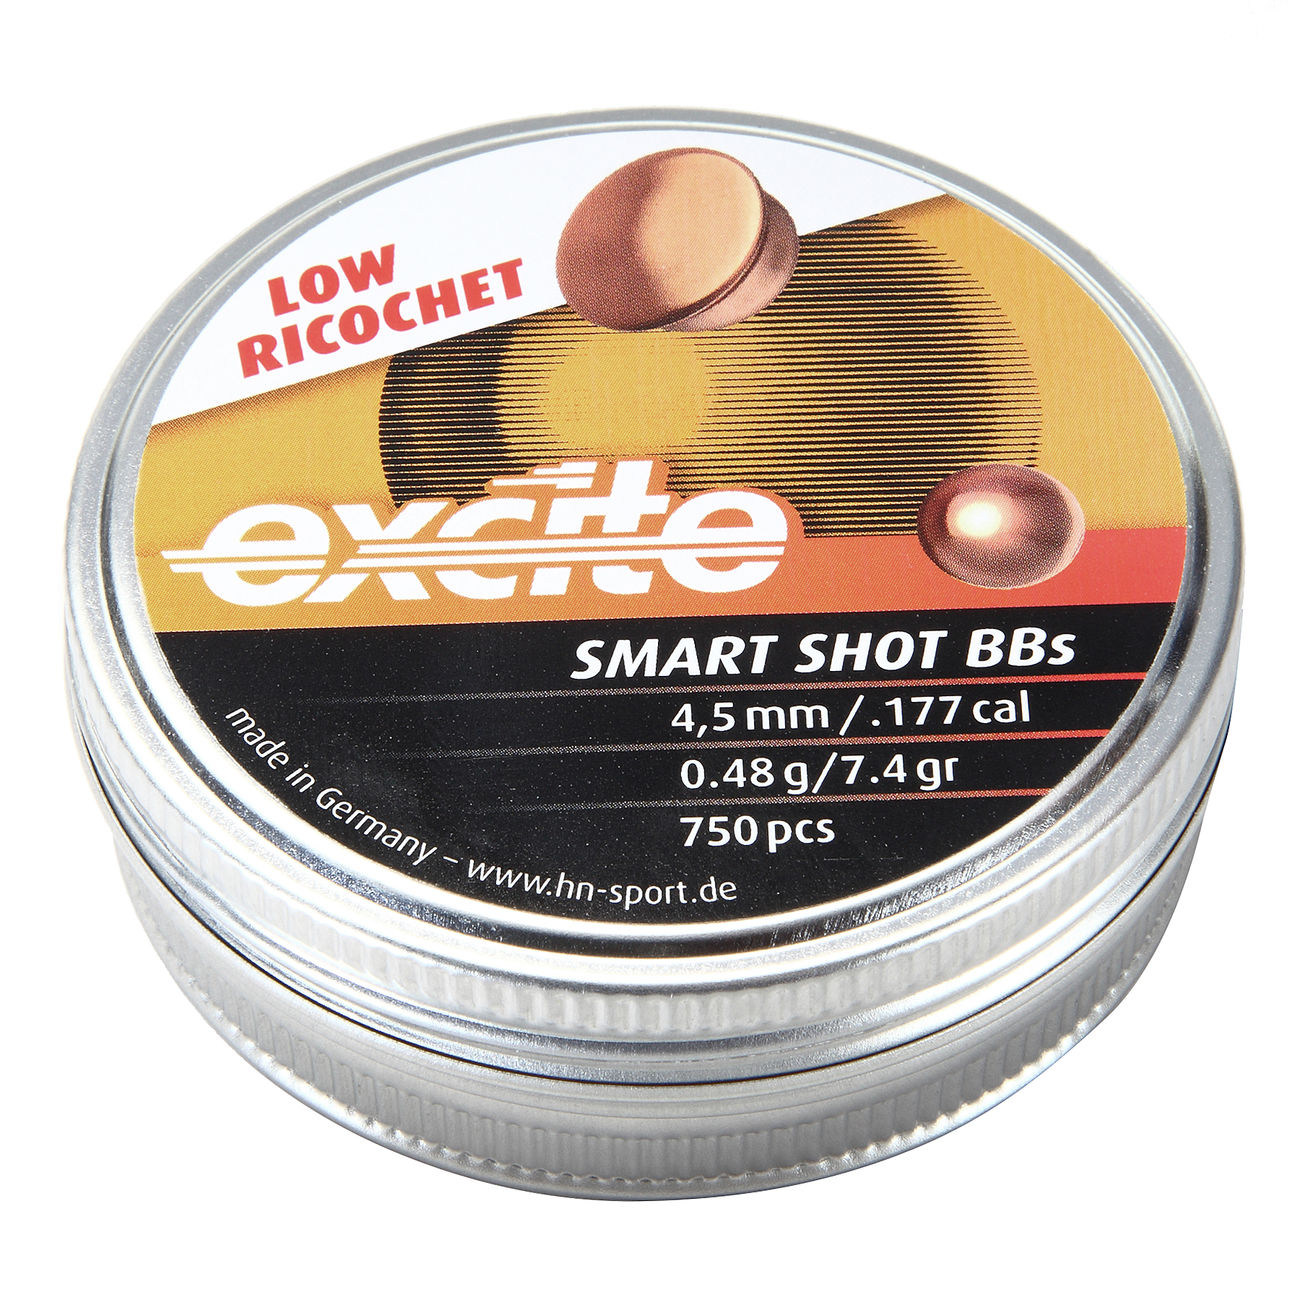 H&N Excite Smart Shot BBs 4,5mm 750 Stück Bild 1